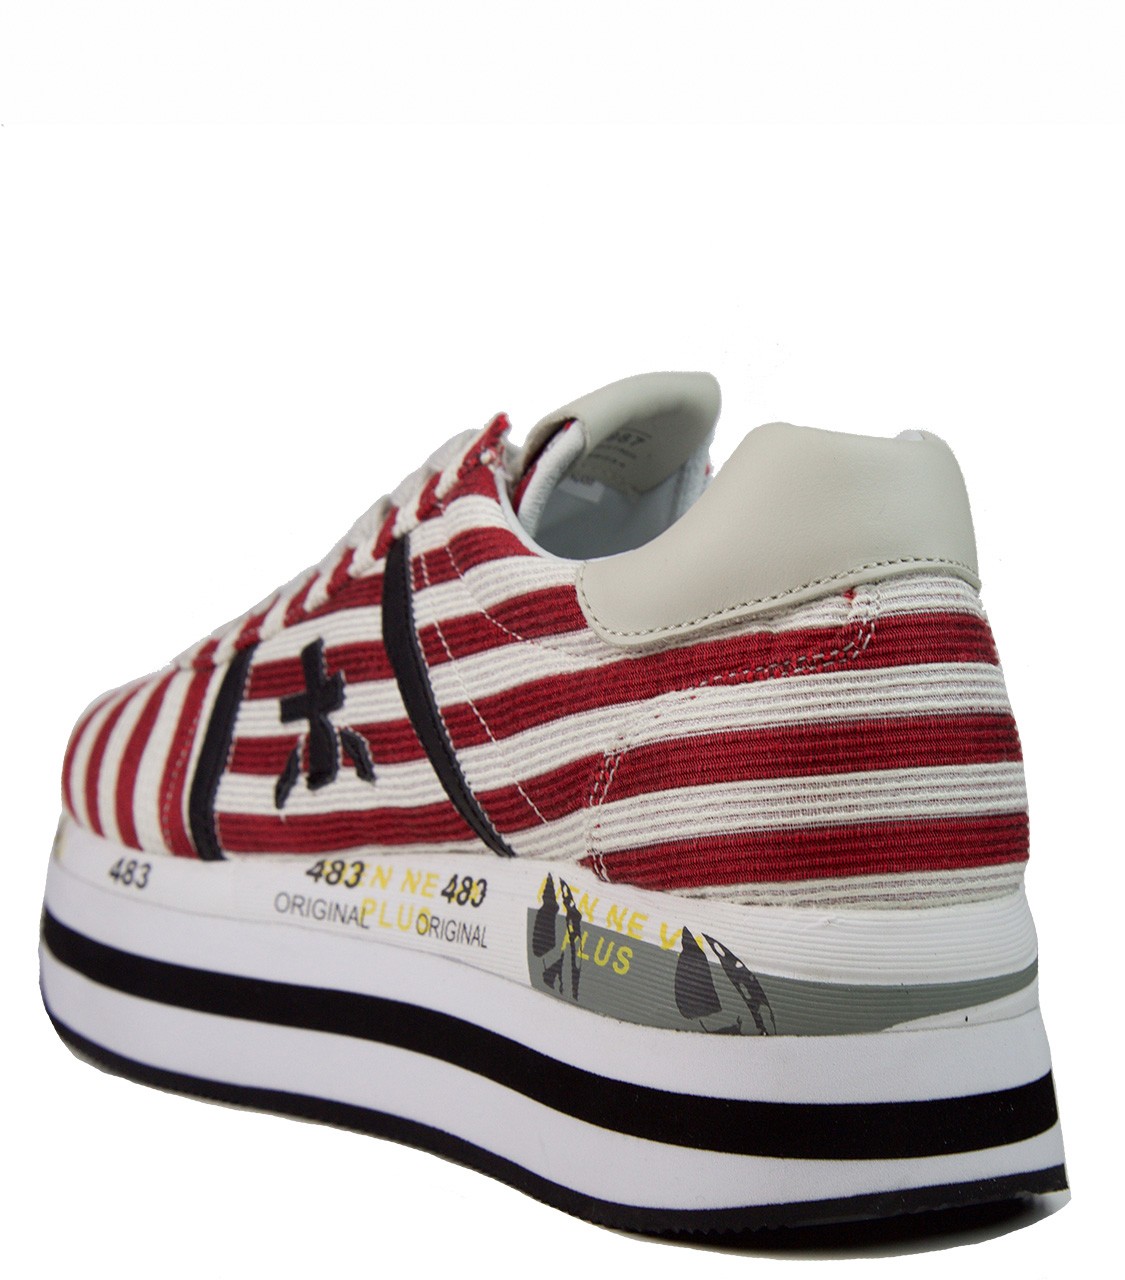 shop Premiata White  Scarpe: Sneakers Premiata White, modello Beth, a righe bianche e rosse, in cotone.

Composizione: 100% cotone.
Suola: 100% gomma.
Zeppa: 5 cm. number 1162